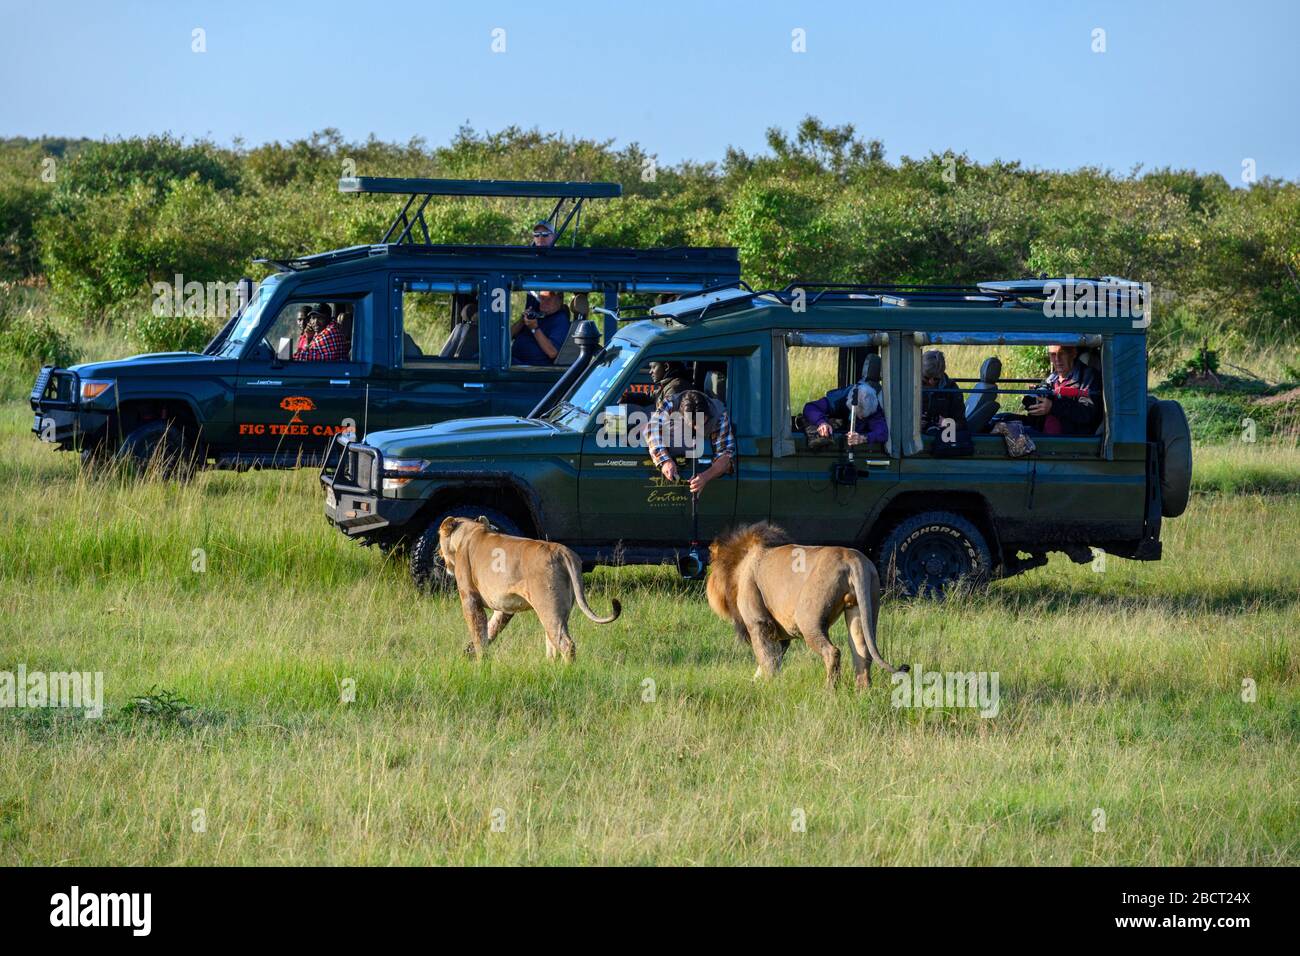 Lion (Panthera leo). Lion und Löwin, die vor Touristen in Safarifahrzeugen spazieren, Masai Mara National Reserve, Kenia, Afrika Stockfoto